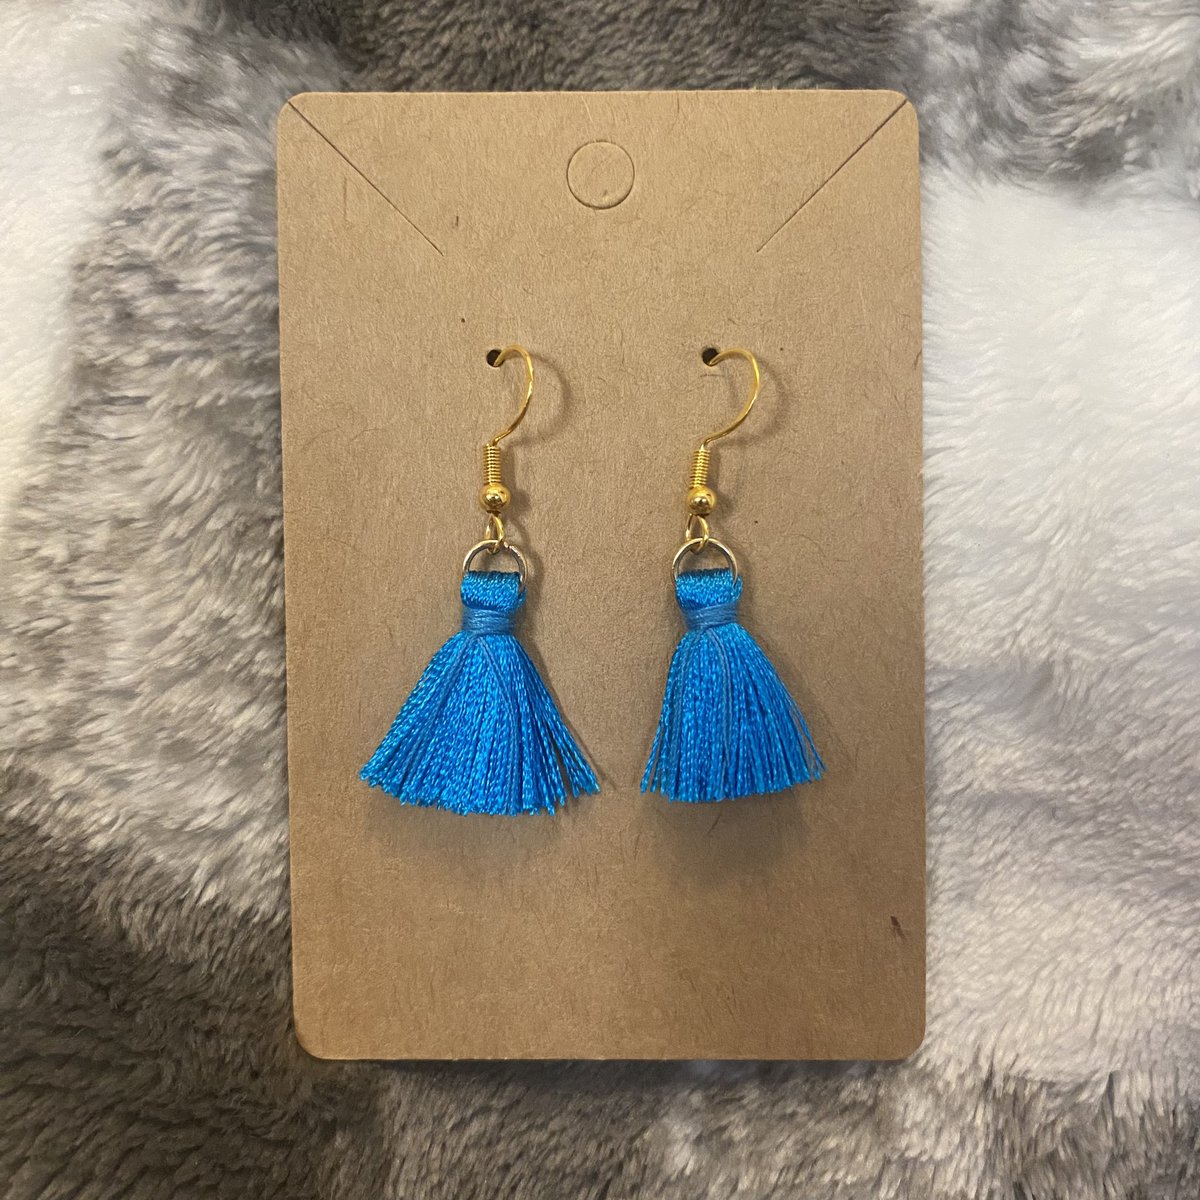 Blue Tassel Dangle Earrings 

etsy.com/shop/ALDesigns…

#etsyshop #etsyseller #etsyhandmade #etsy #handmade #handmadejewelry #handmadeearrings #earrings #handmadeearringsforsale #earringstyle #etsygifts #etsysellersofinstagram #jewelry #jewelrydesign